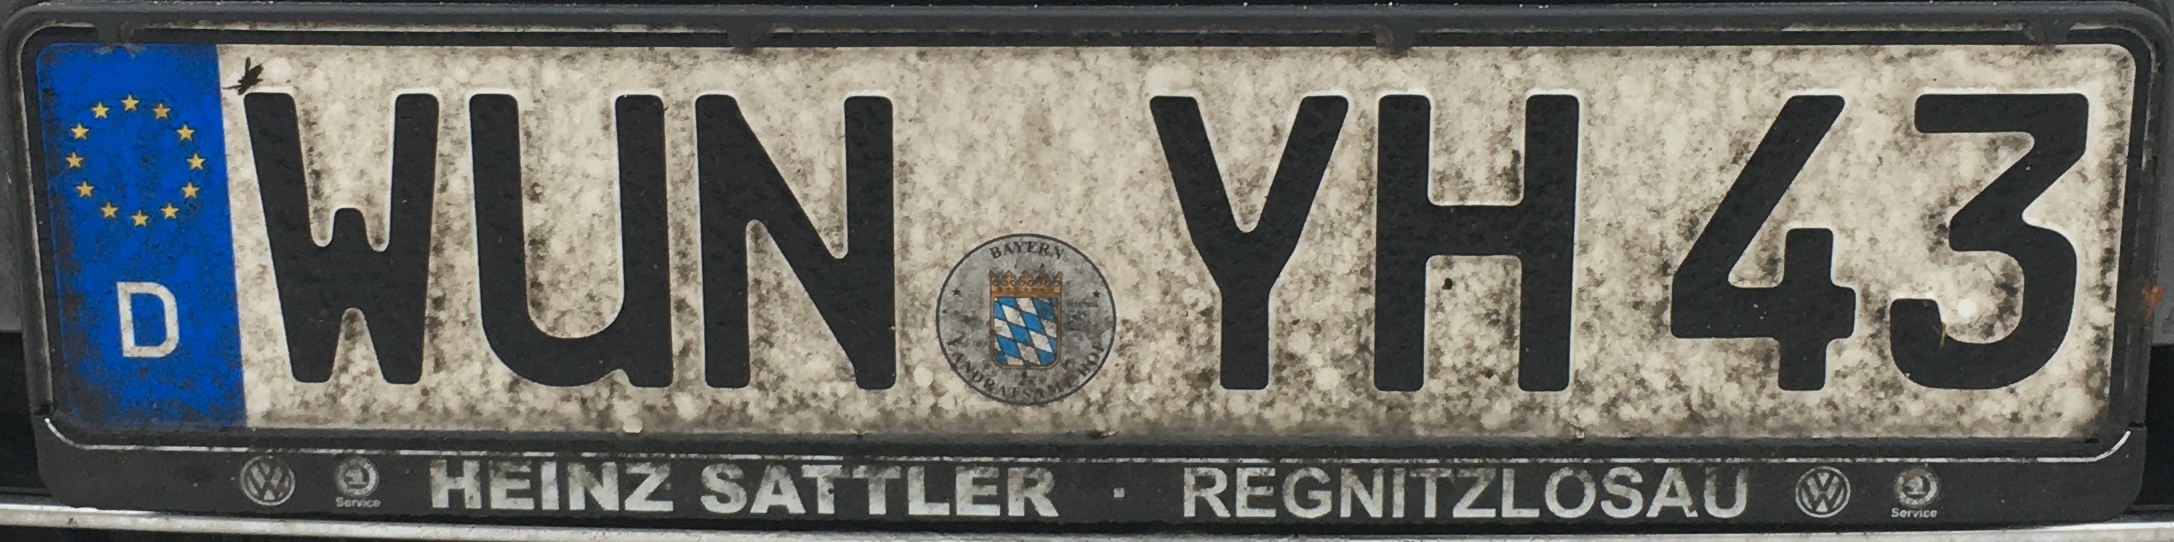 Registrační značky Německo - WUN - Wunsiedel im Fichtelgebirge, foto: www.podalnici.cz